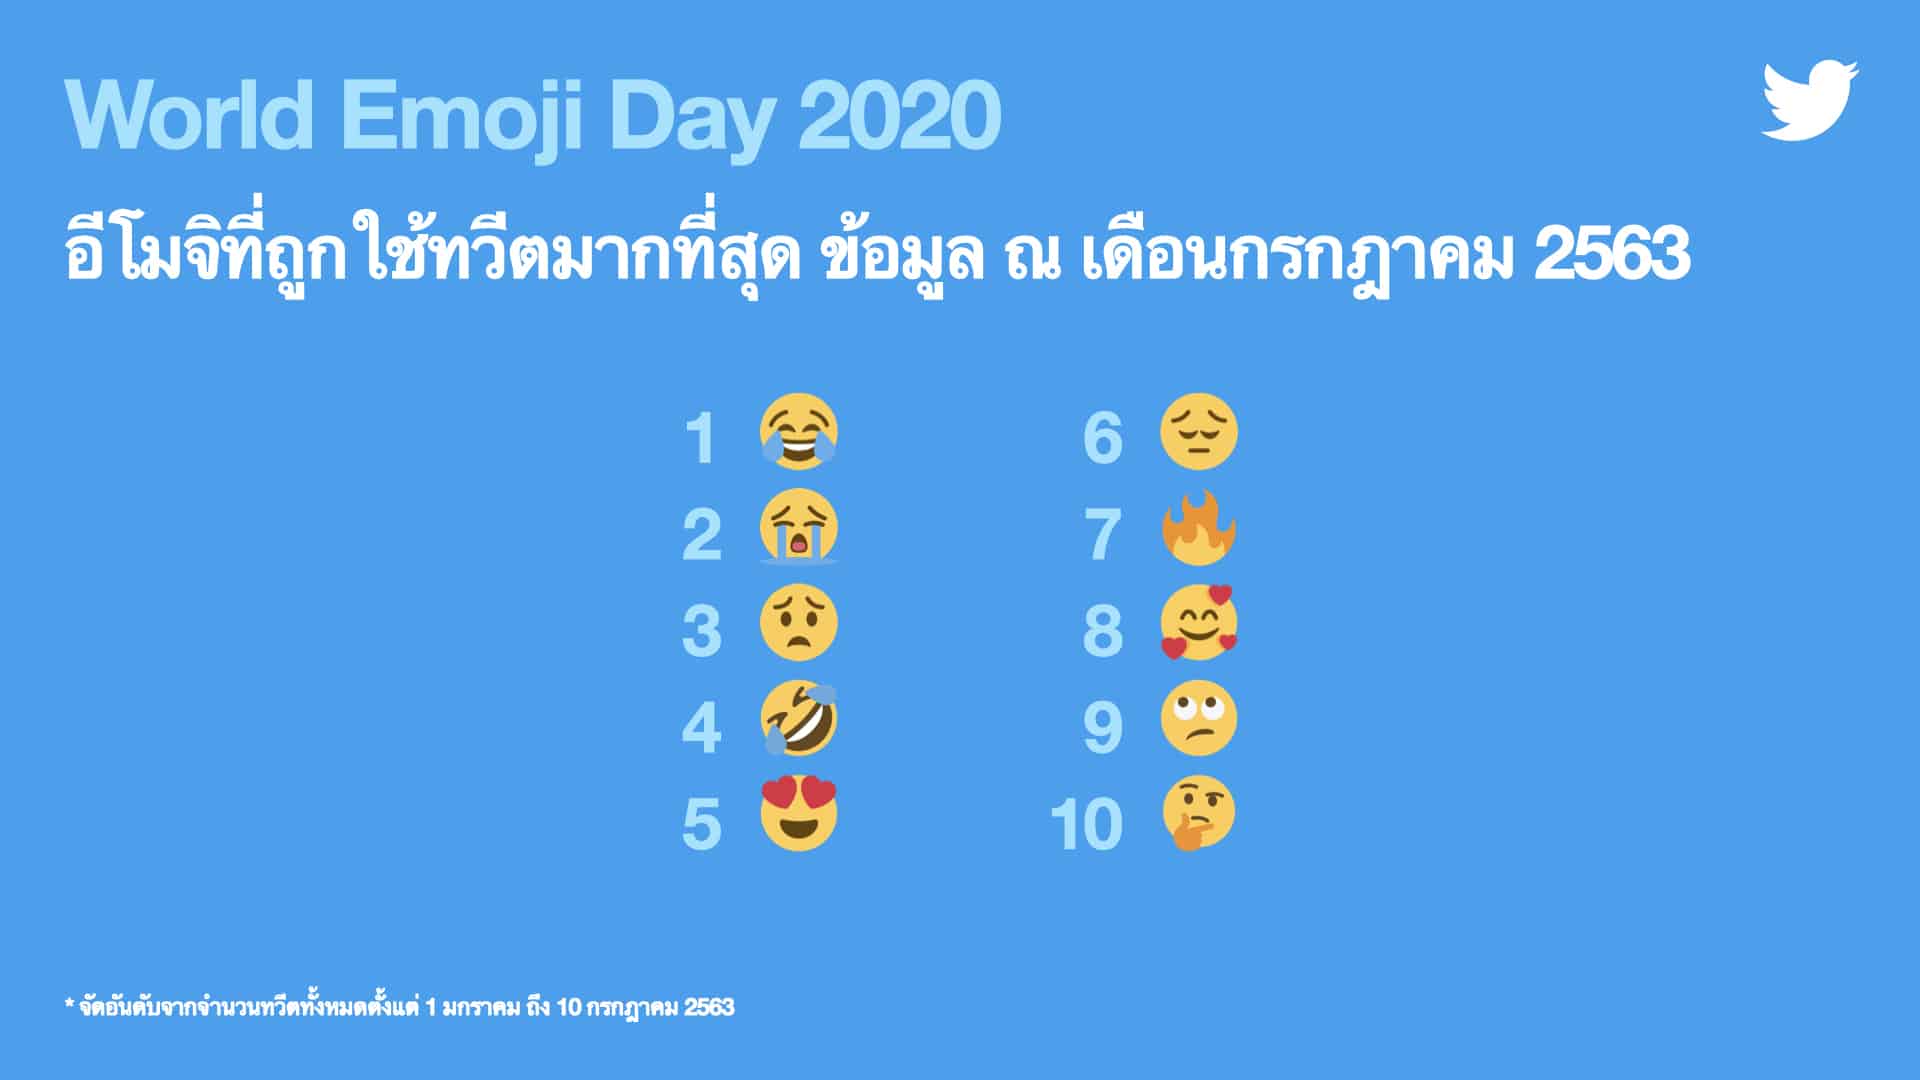 Twitter เผยเทรนด์การใช้ Emoji ในไทย ฉลอง #วันอีโมจิโลก